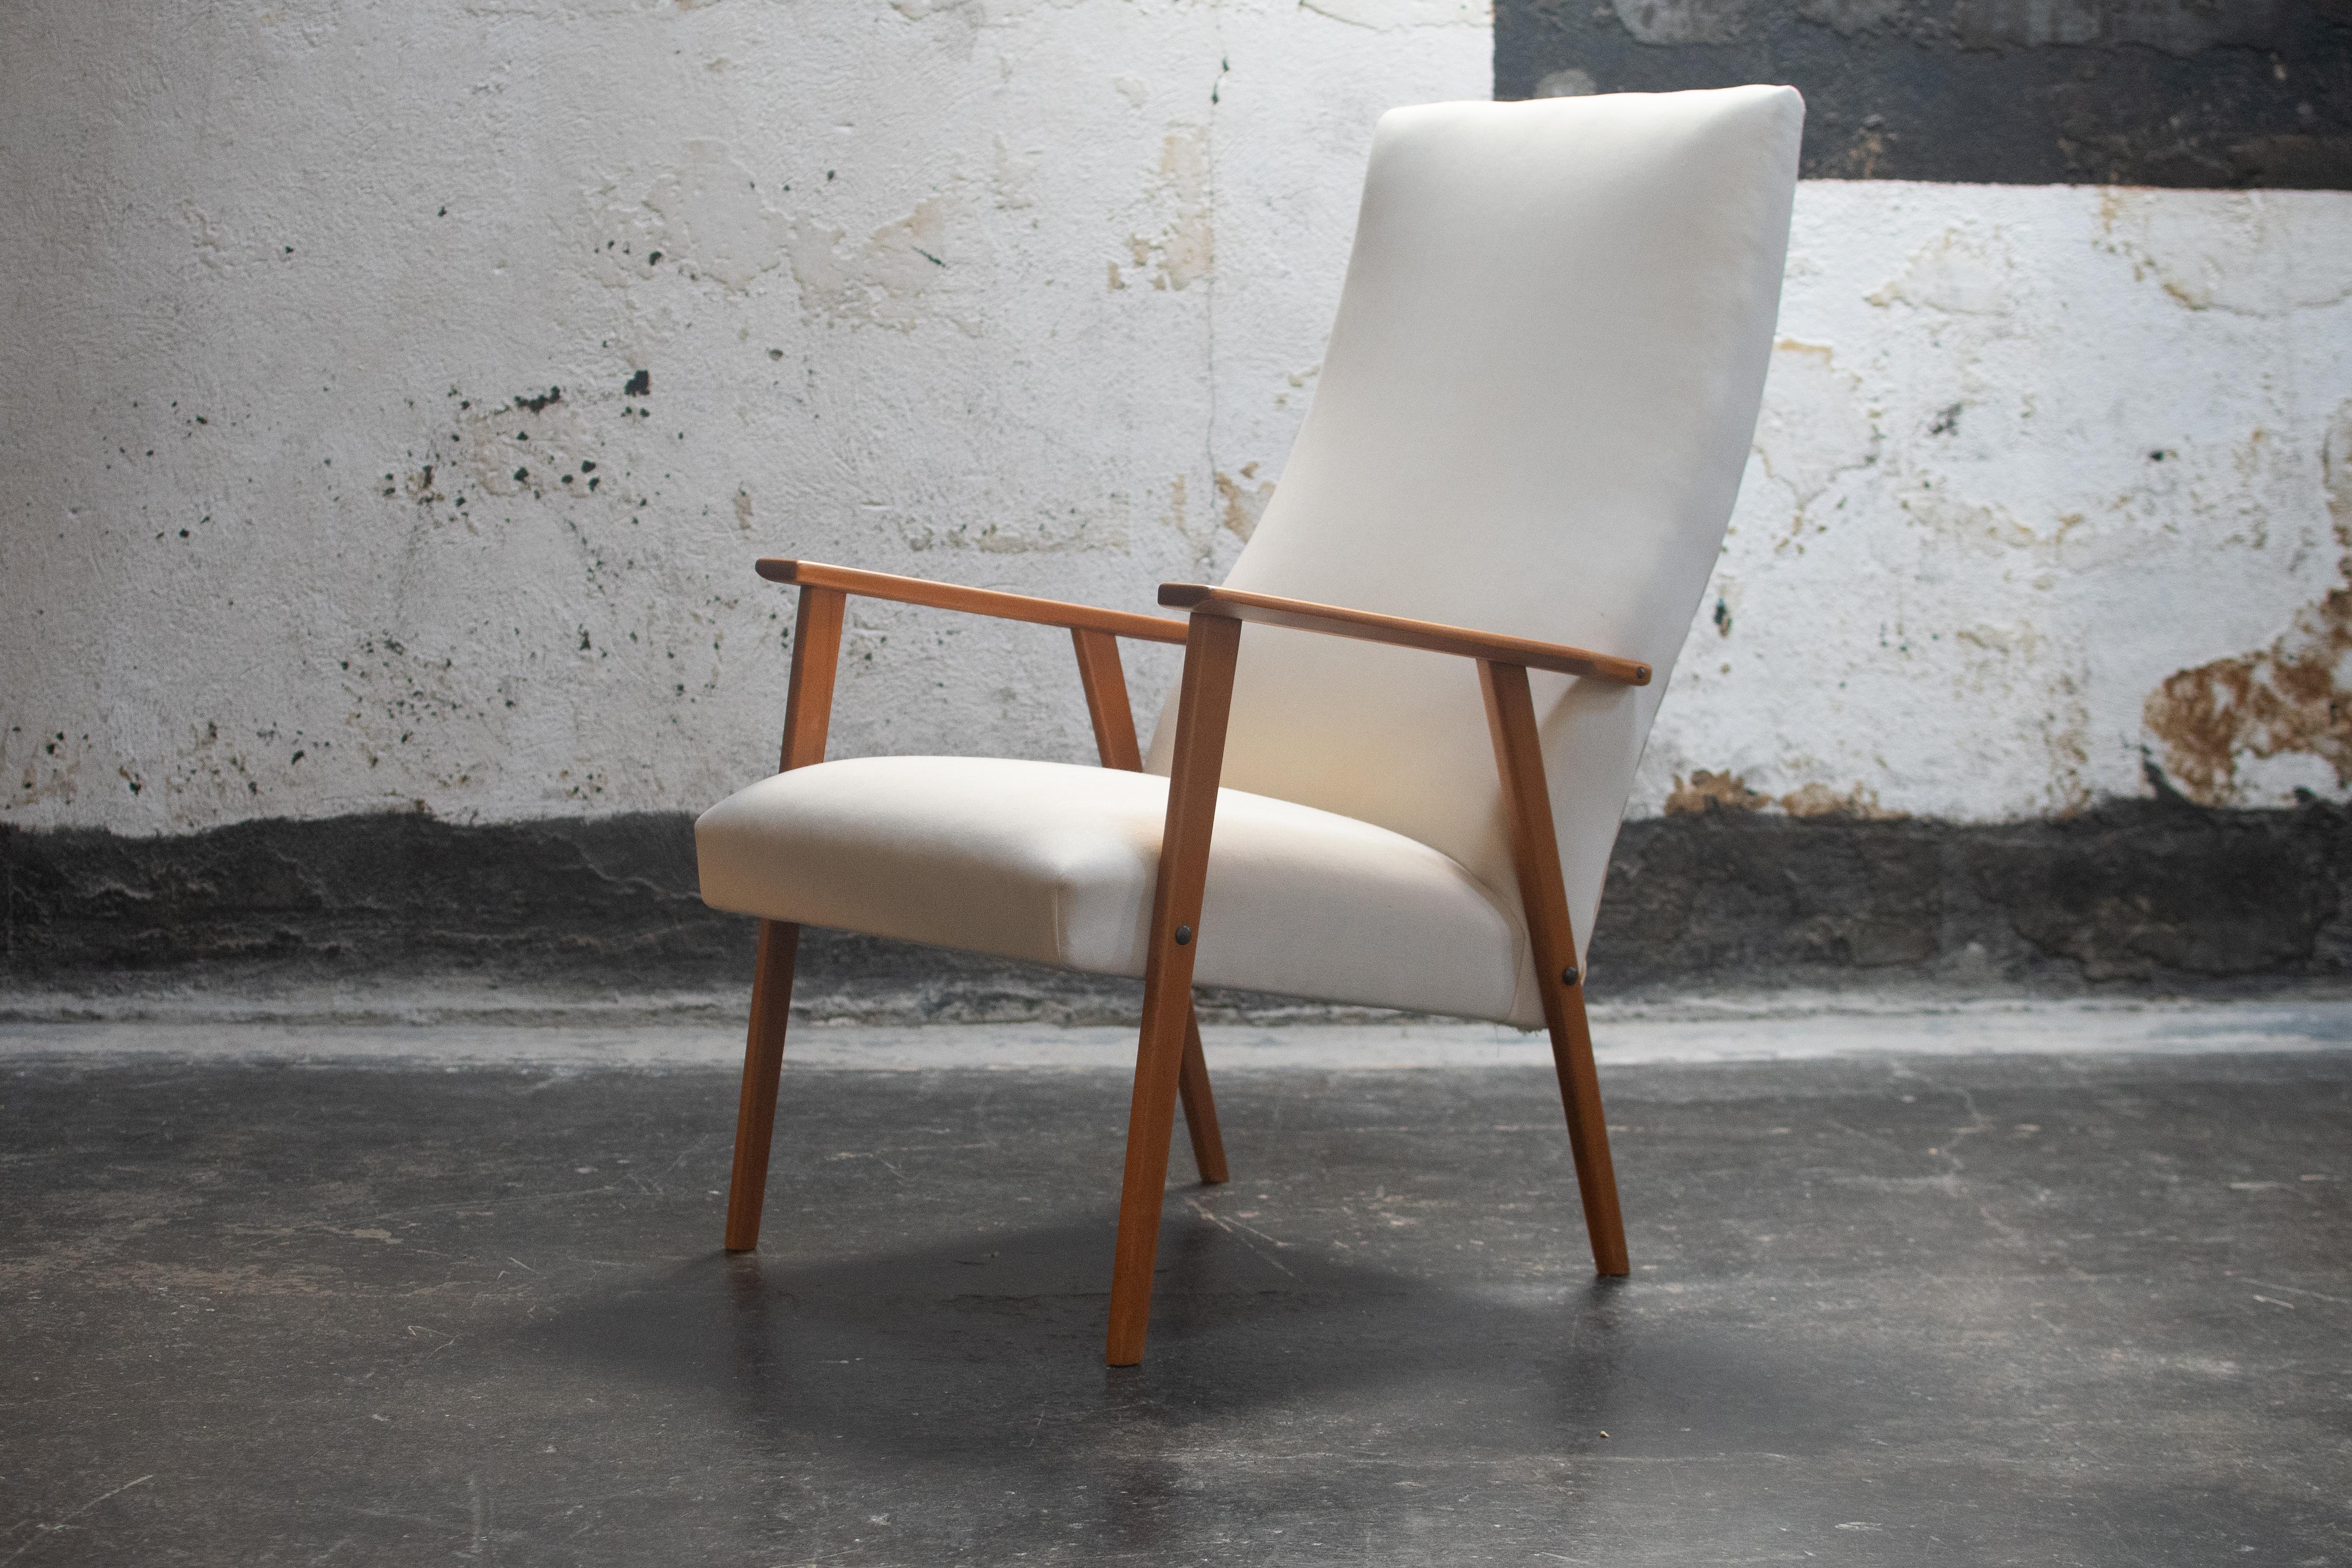 Einzelner schwedischer Sessel aus Musselin. Die hohe Rückenlehne im Mod-Stil hat eine tiefe Neigung, die sich perfekt zum Zurücklehnen eignet. Die abgewinkelten Beine aus hellem Teakholz tragen eine quadratische, geometrische Sitzfläche und